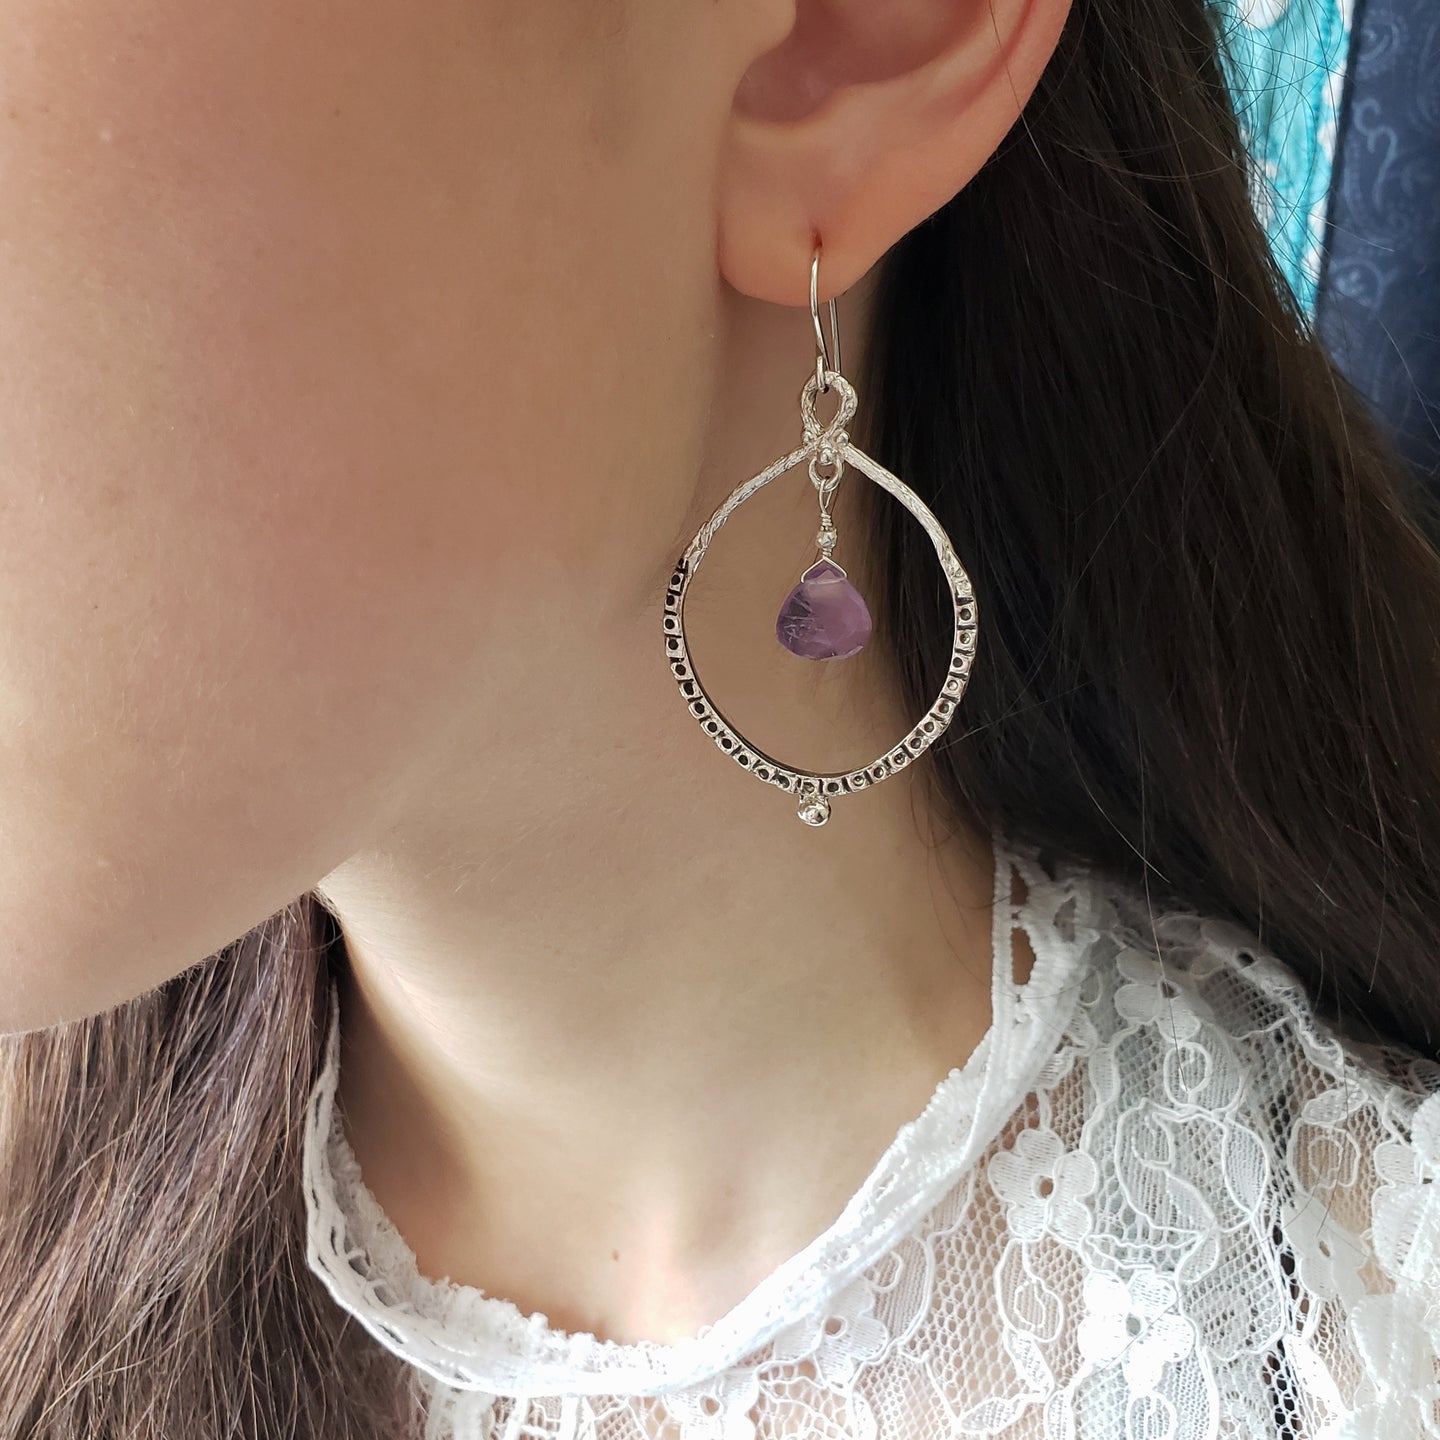 Empress Hoop Earrings in Silver and Amethyst